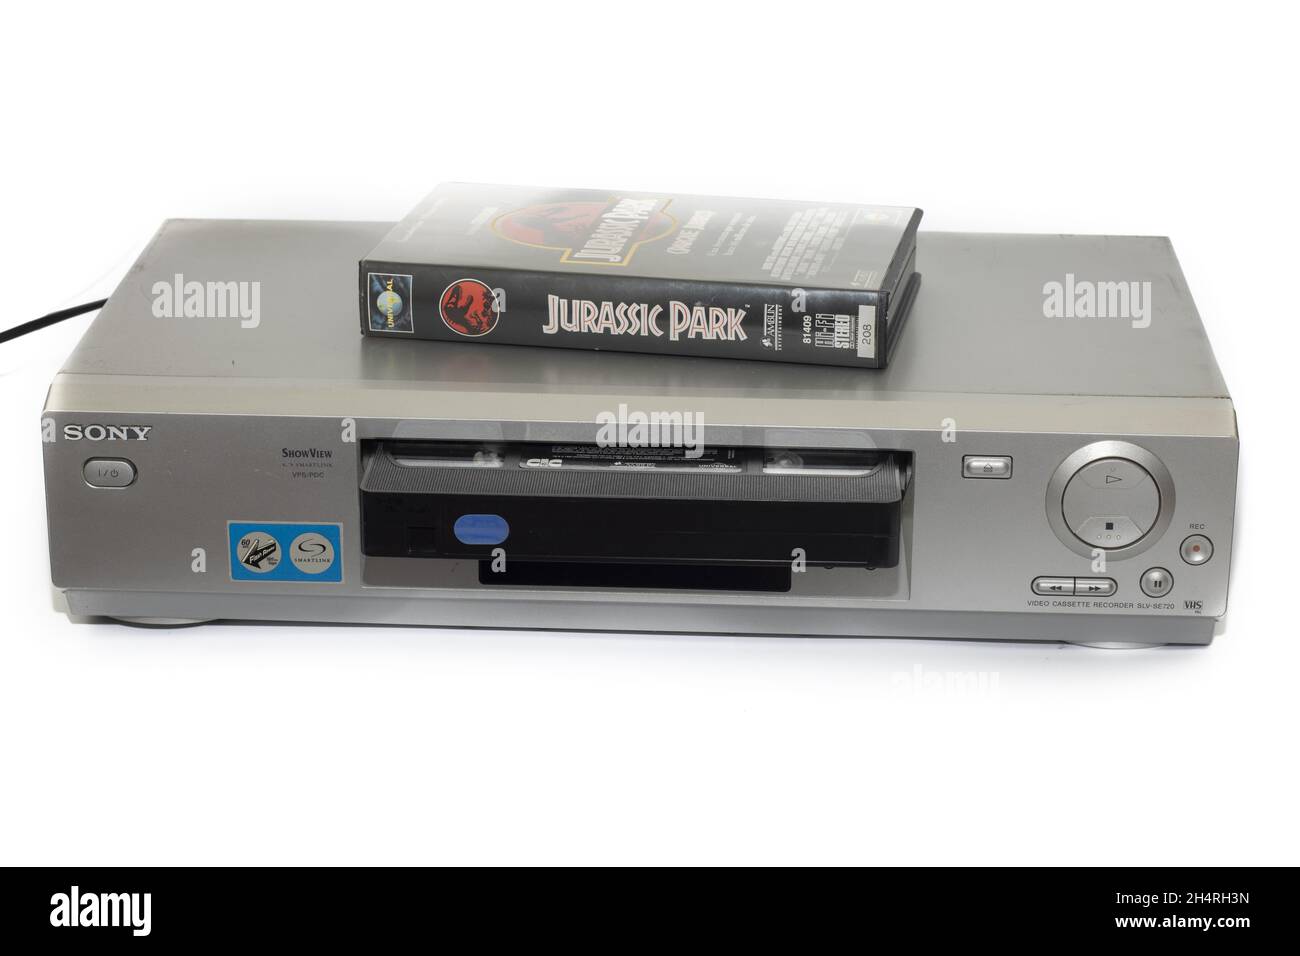 HUELVA, ESPAGNE - 11 octobre 2021 : la cassette VHS de Jurassic Park sur un ancien magnétoscope Sony isolé sur fond blanc Banque D'Images